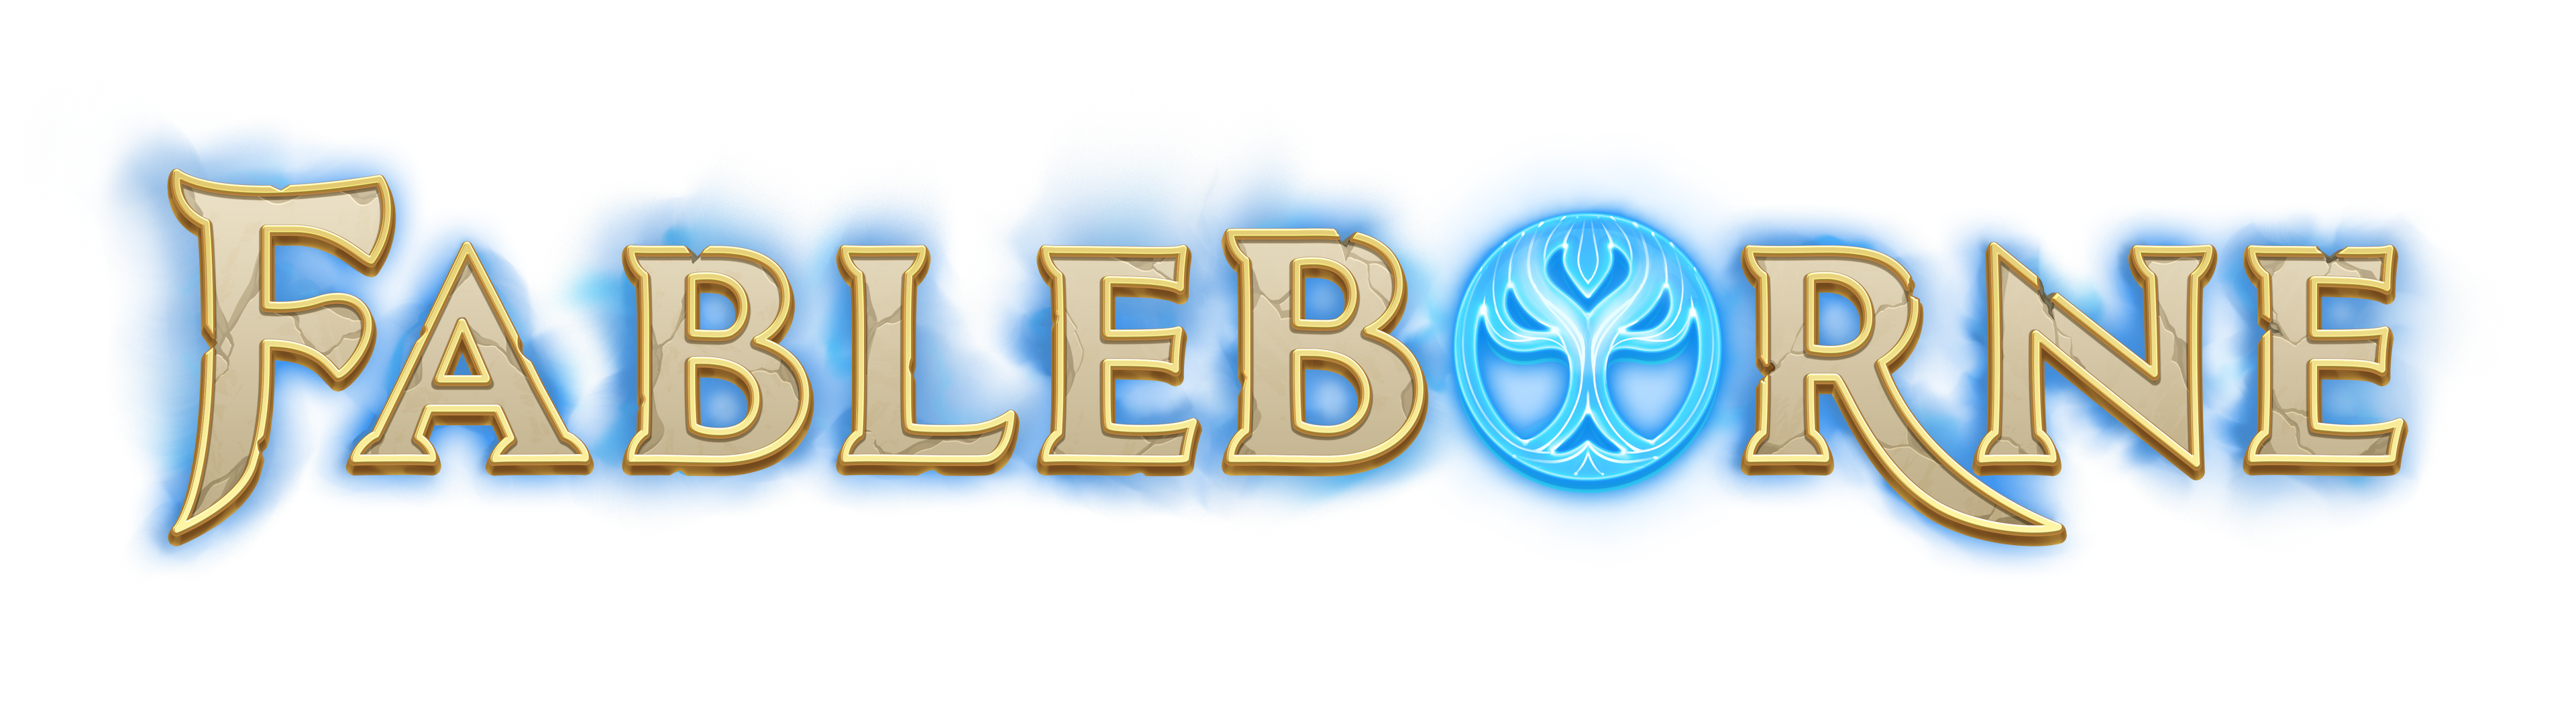 Fableborne-Logo_Long_Glow.png